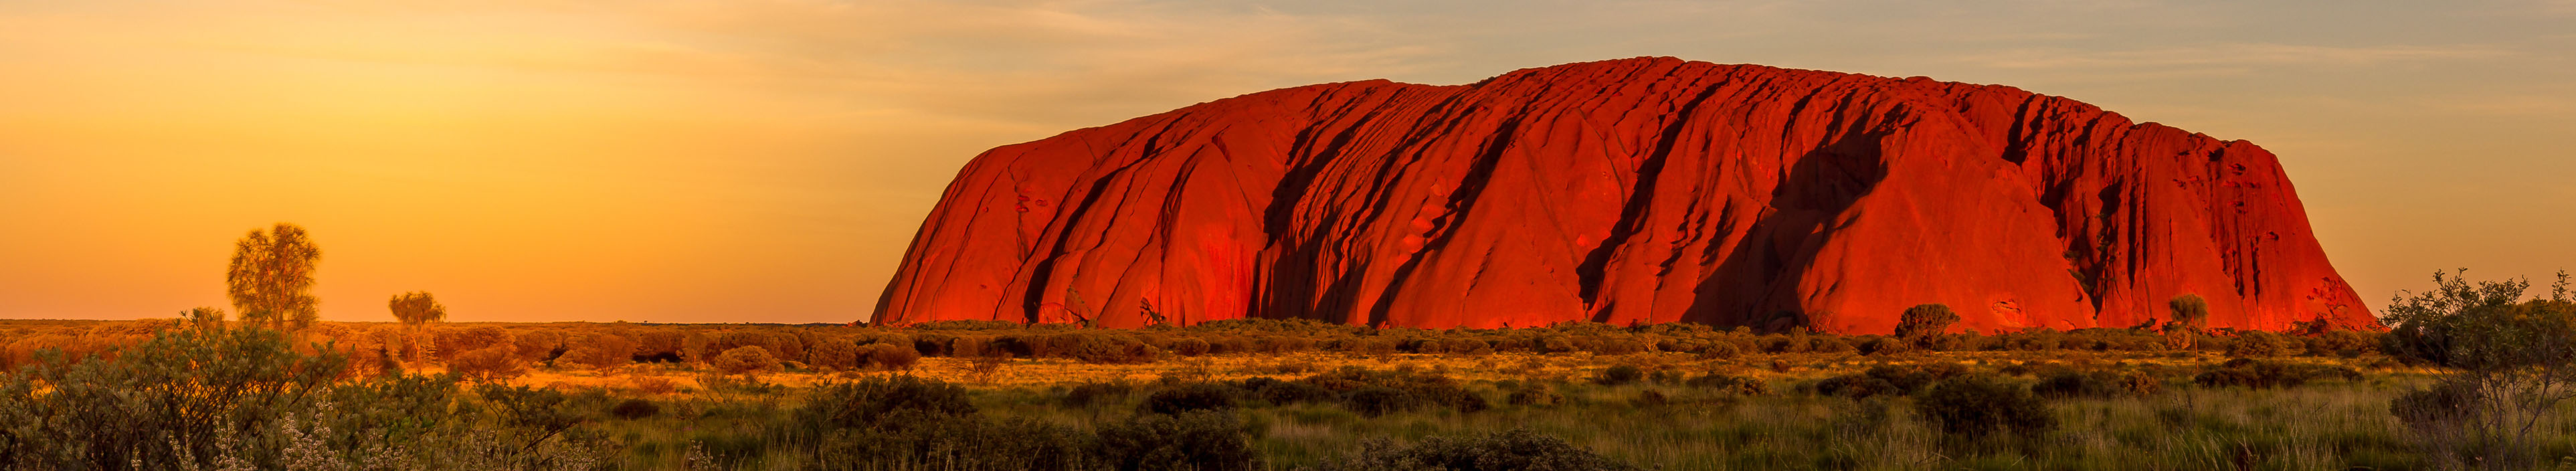 Inselberg Uluru/ Ayers Rock in der australischen Wüste, in der Dämmerung.